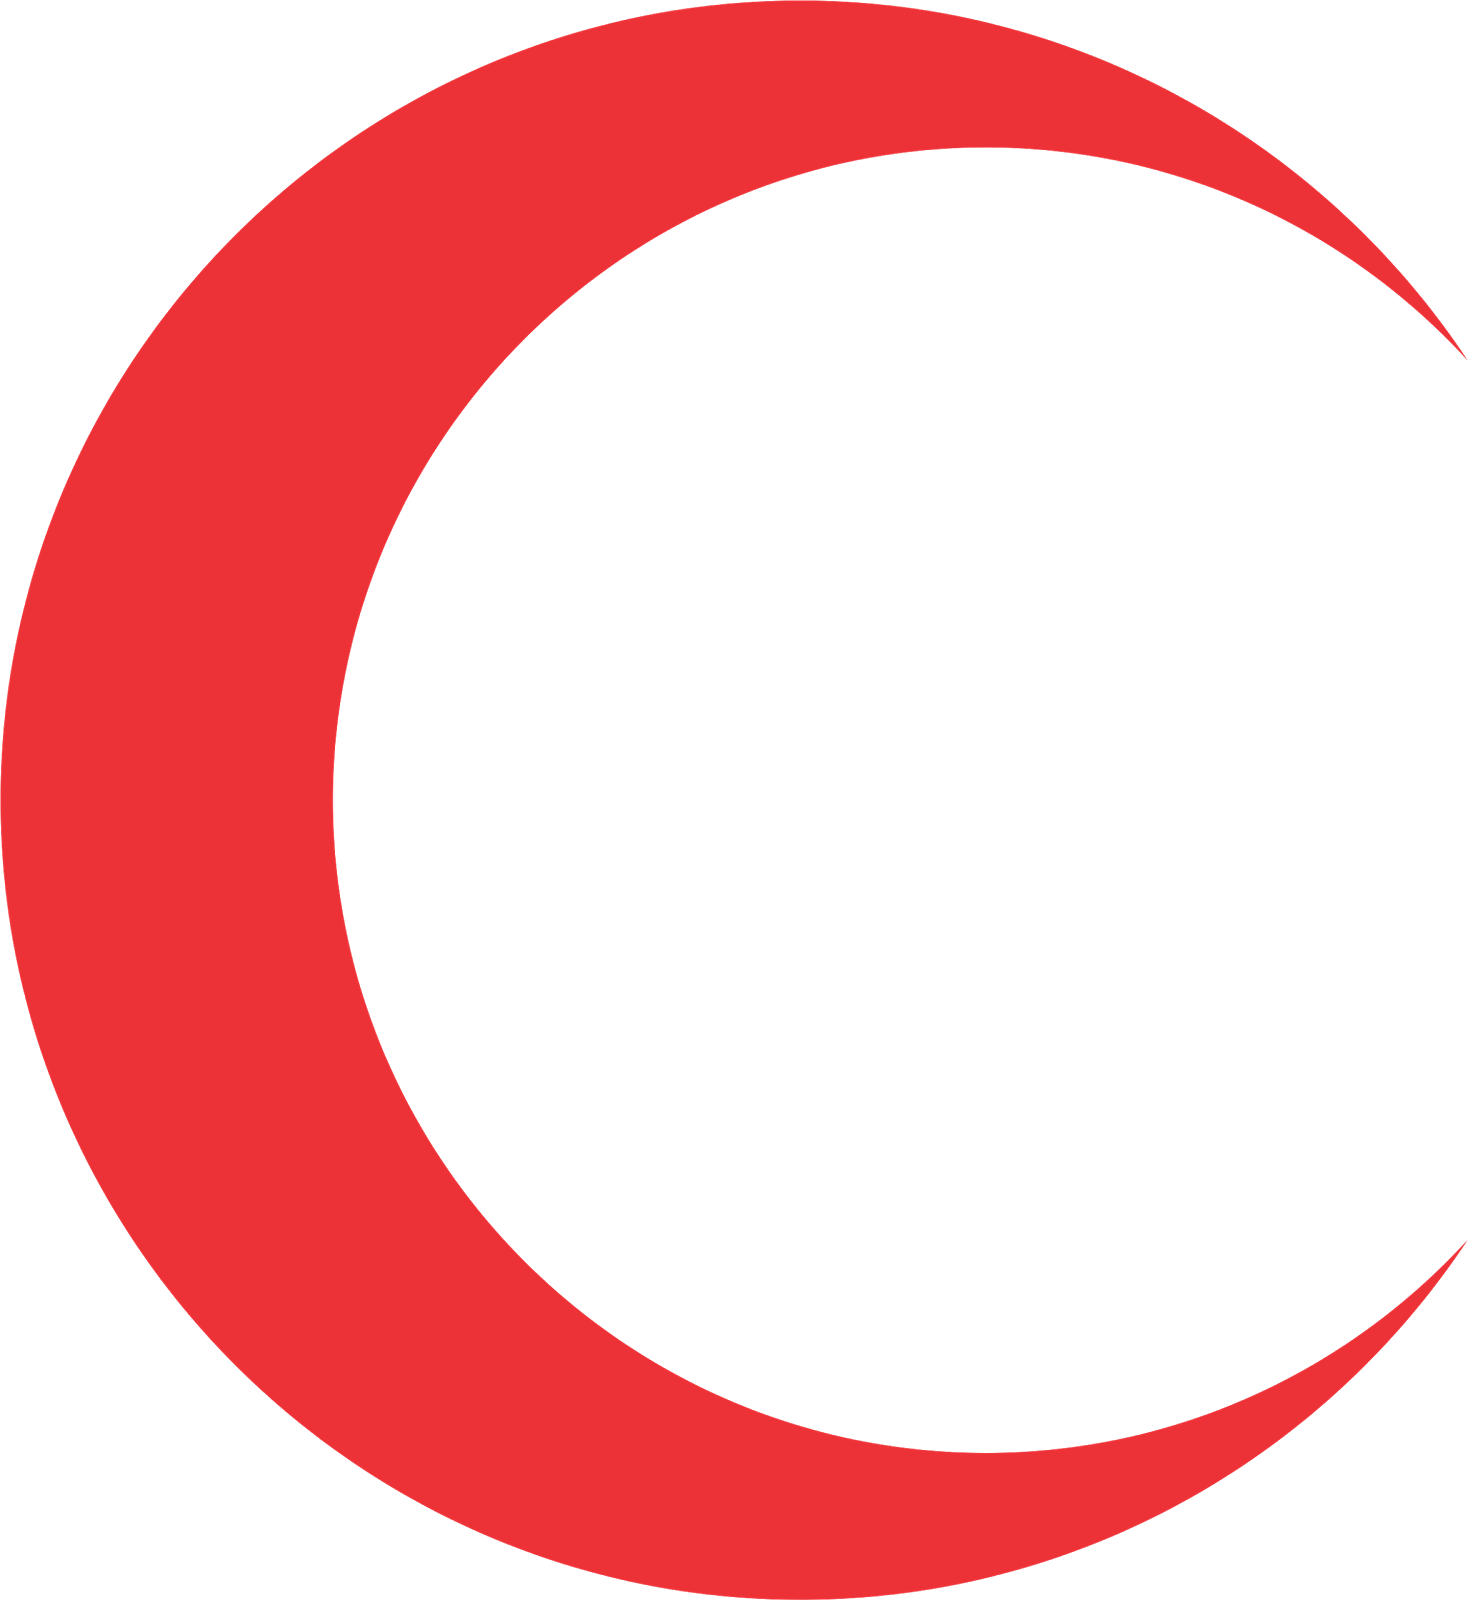  Logo Bulan  Sabit Png Arini Gambar